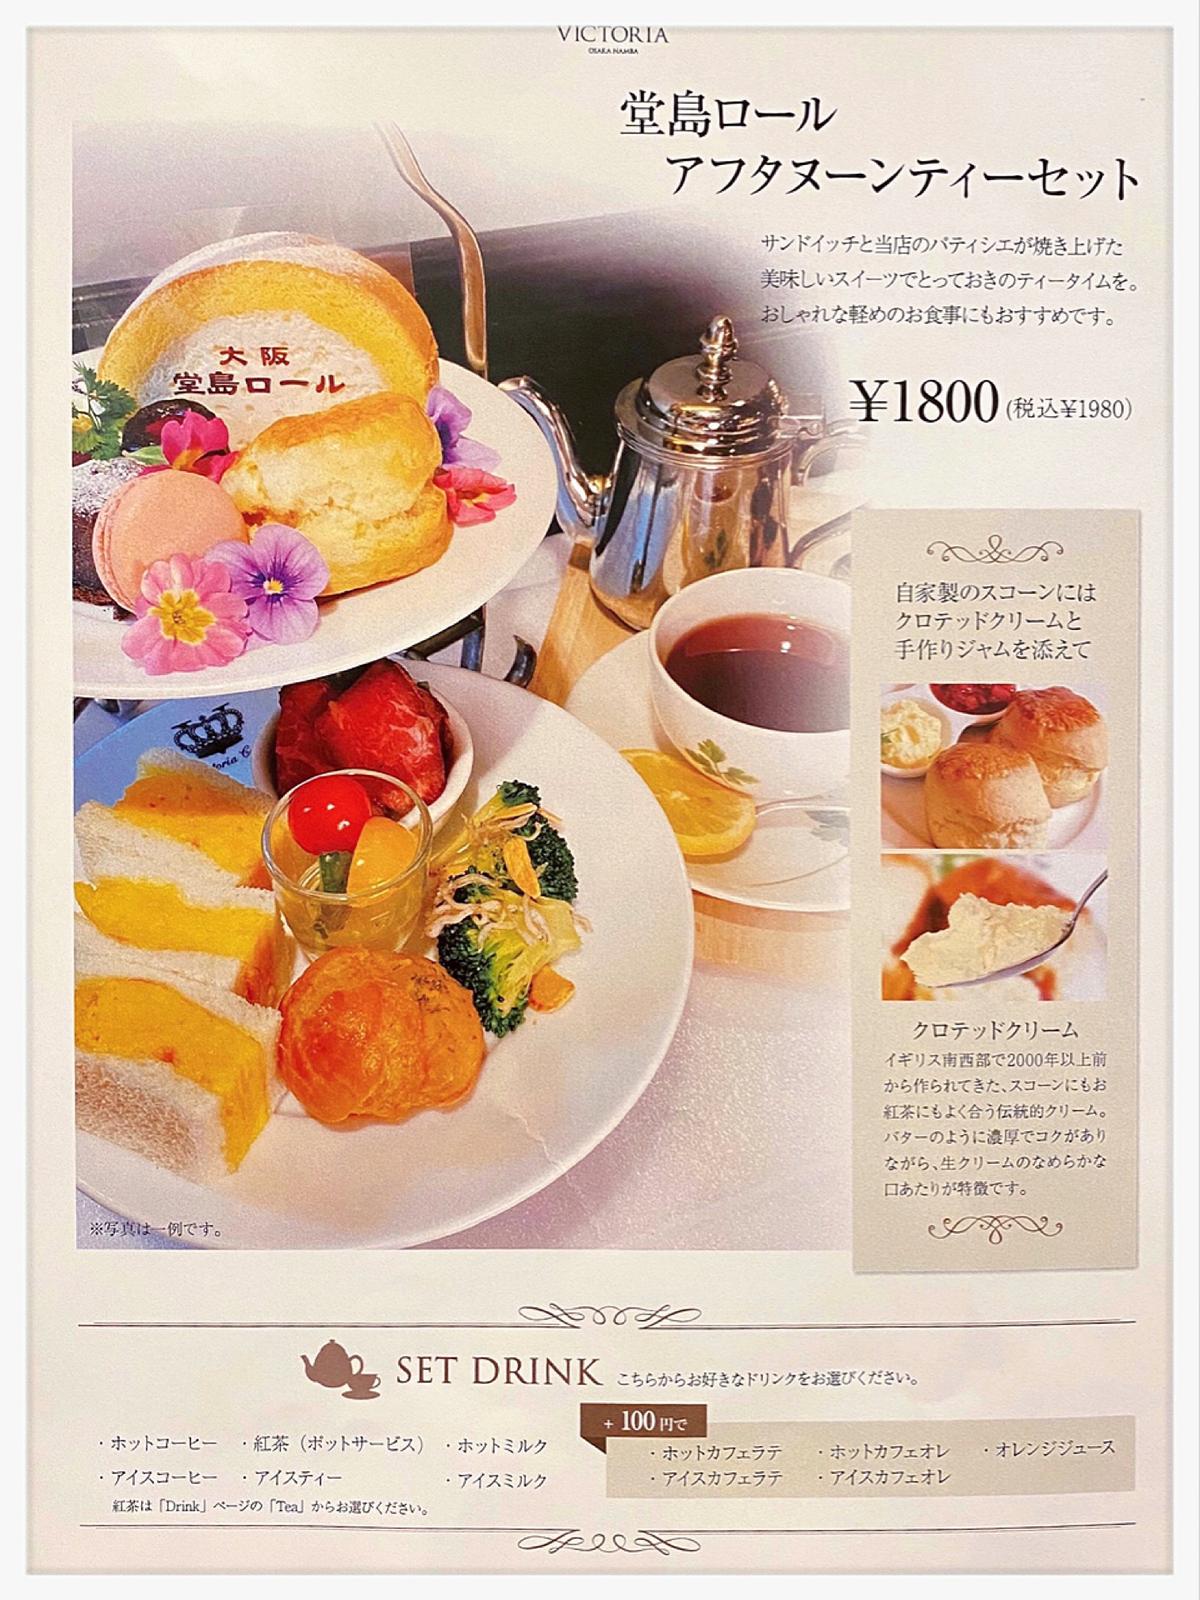 ヴィクトリア カフェ 大阪 難波 唯一モンシェール とコラボのカフェ Fox Osakaが投稿したフォトブック Sharee